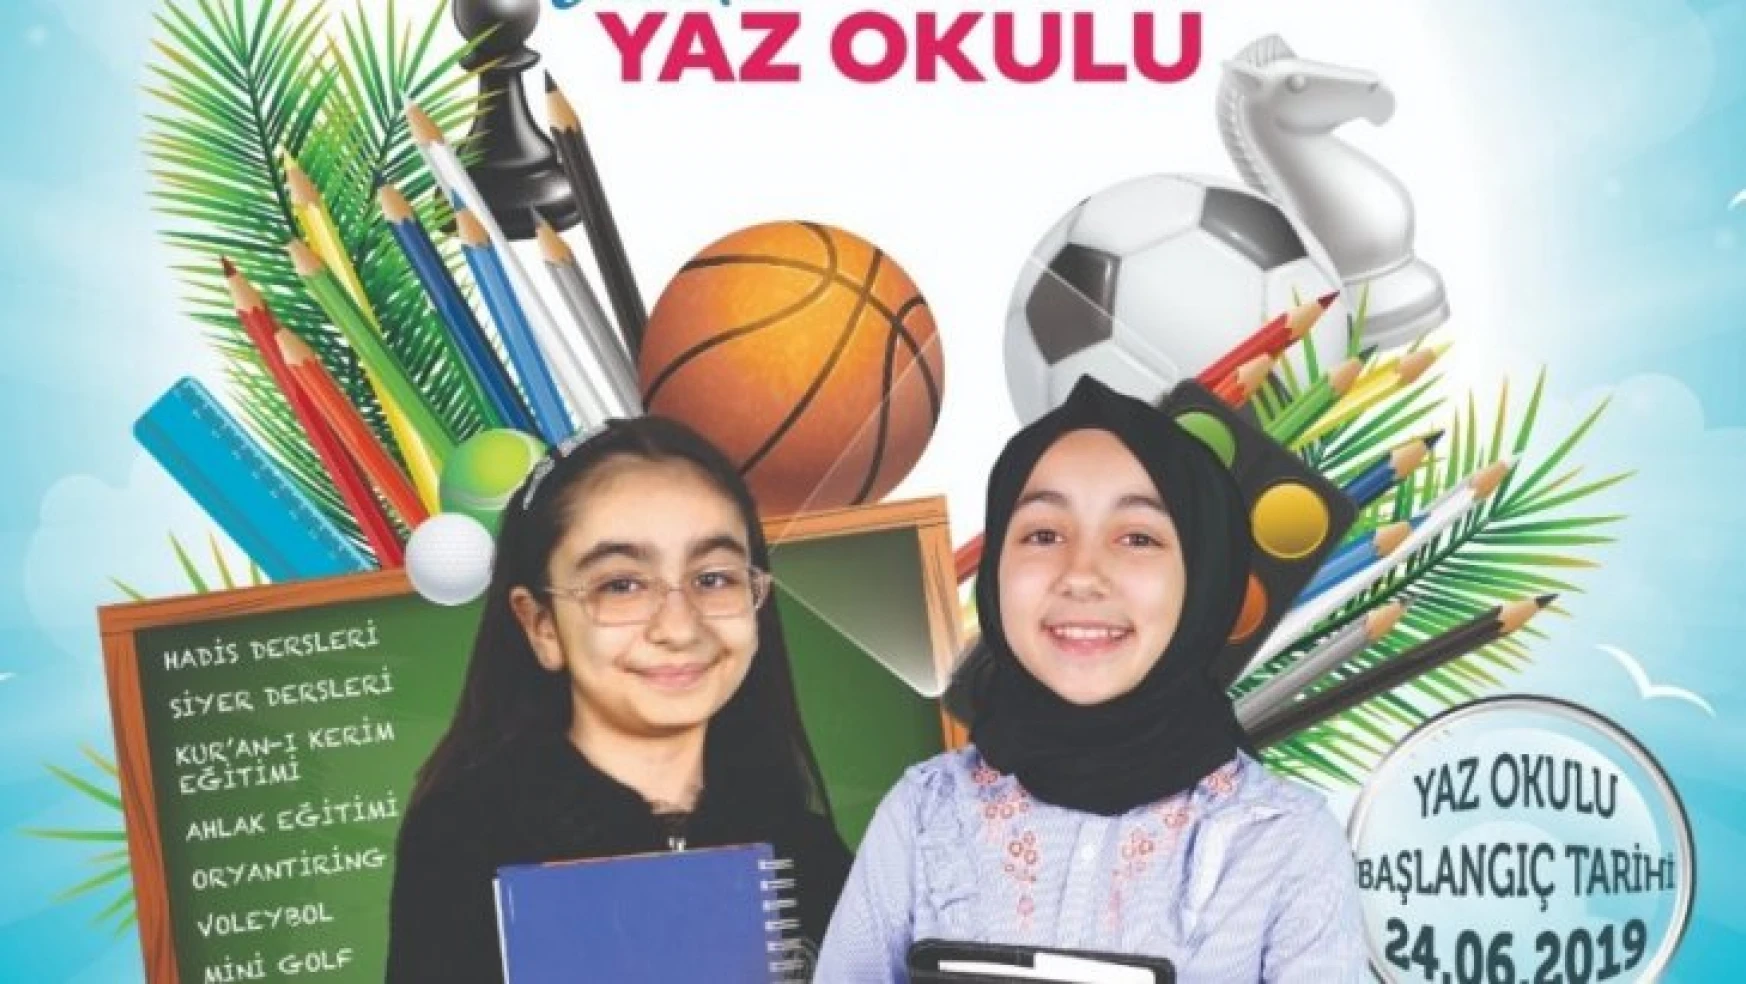 TÜGVA Elazığ'da Yaz Okulu Açıyor